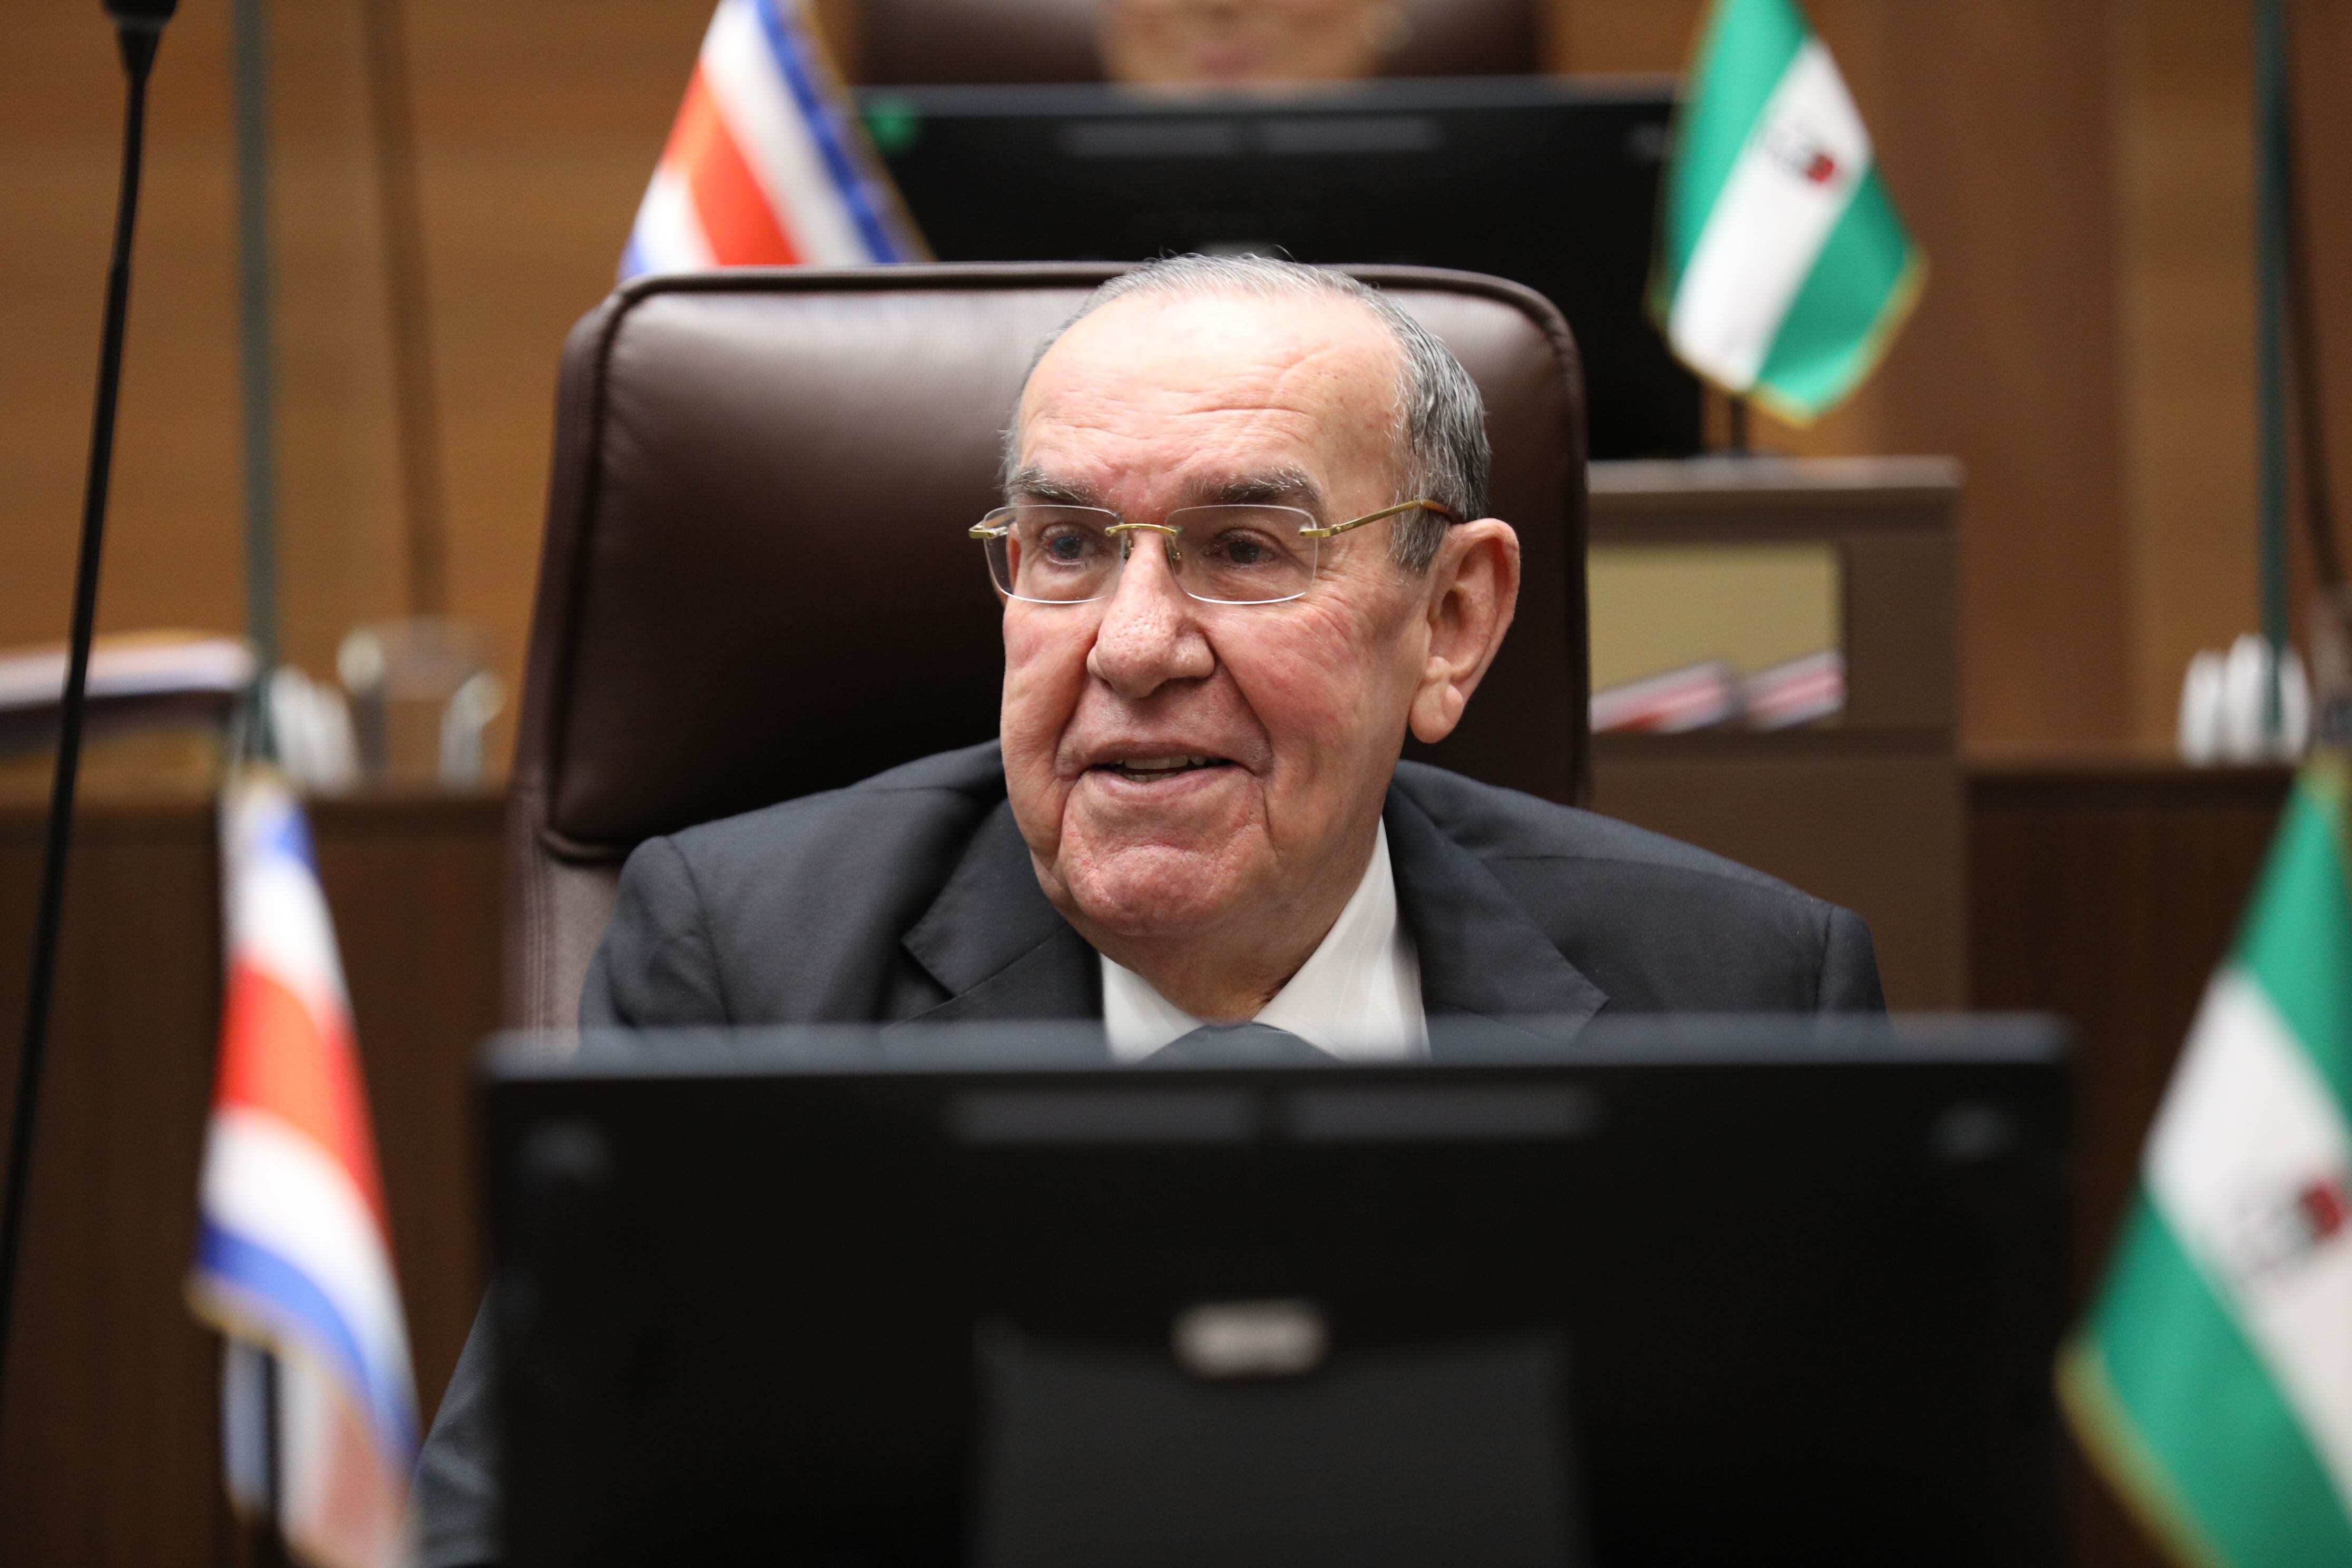 El diputado liberacionista Rodrigo Arias, abogado y politólogo de 76 años, fue reelecto este lunes como presidente de la Asamblea Legislativa.